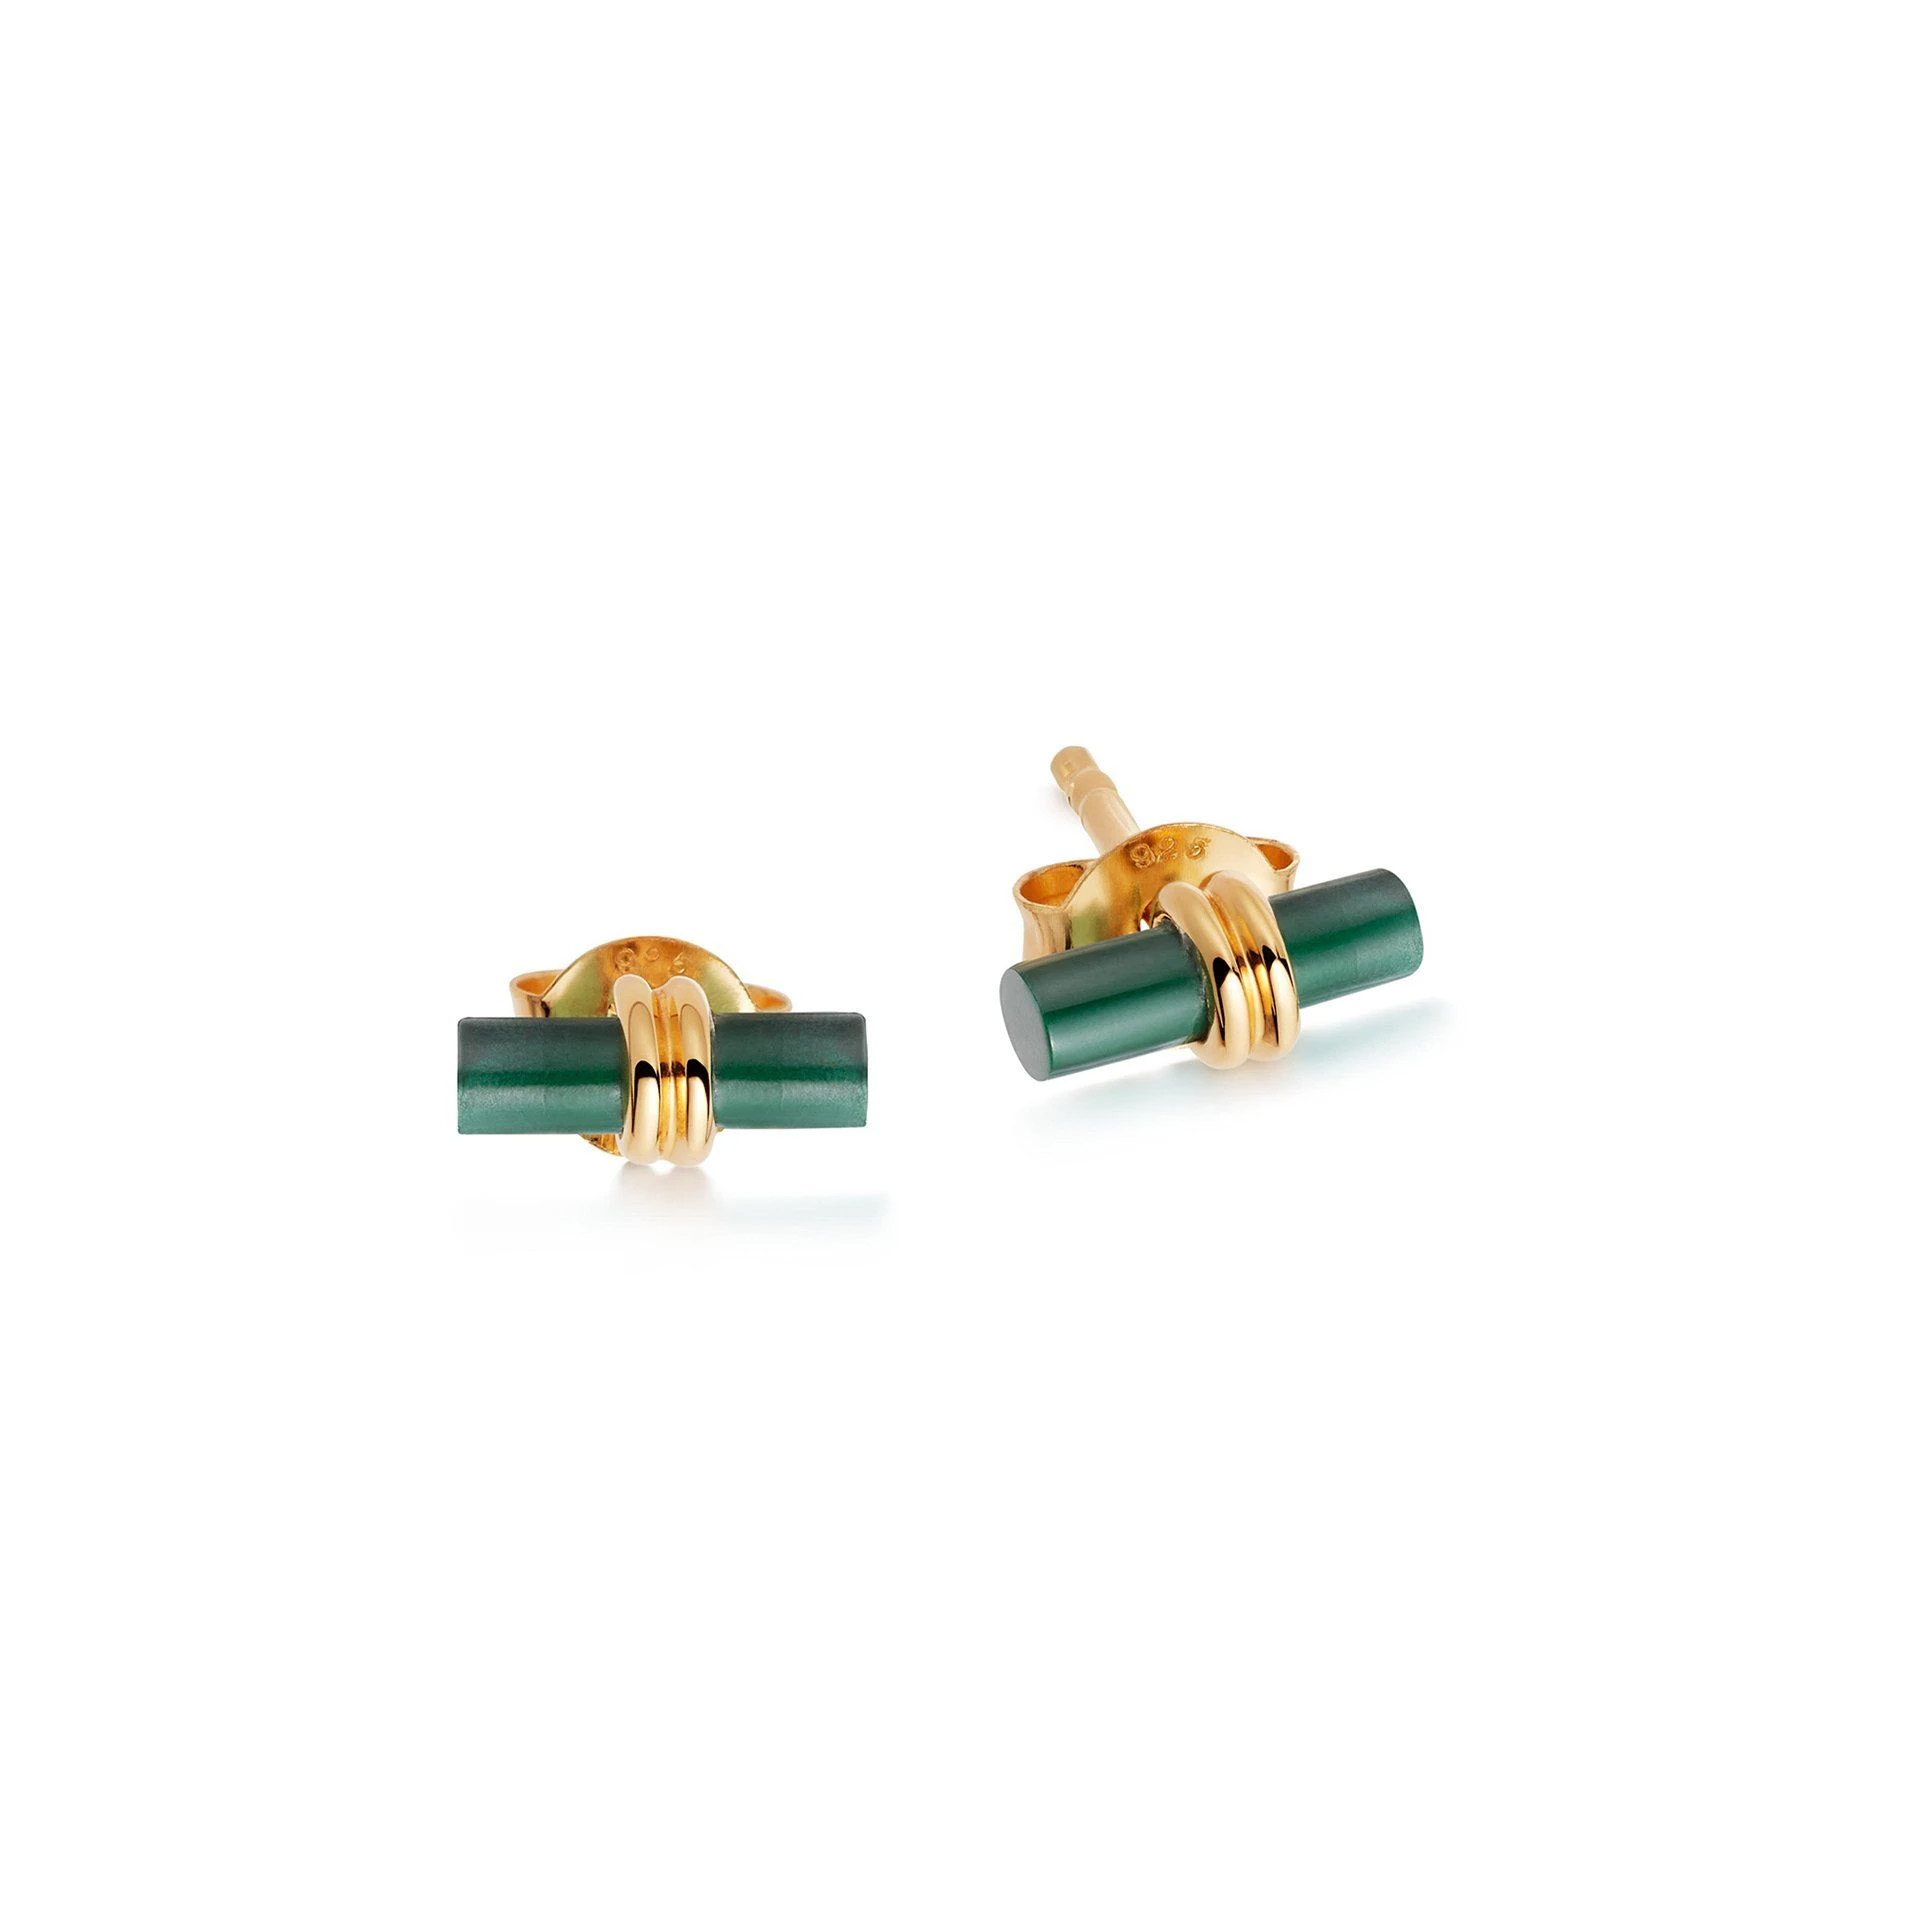 Groothandel OEM/ODM-juweliersware-ontwerp pasgemaakte oorbelle-studs groen Malachiet-steen in 18 sent goud vermeil sterling silwer oem diens